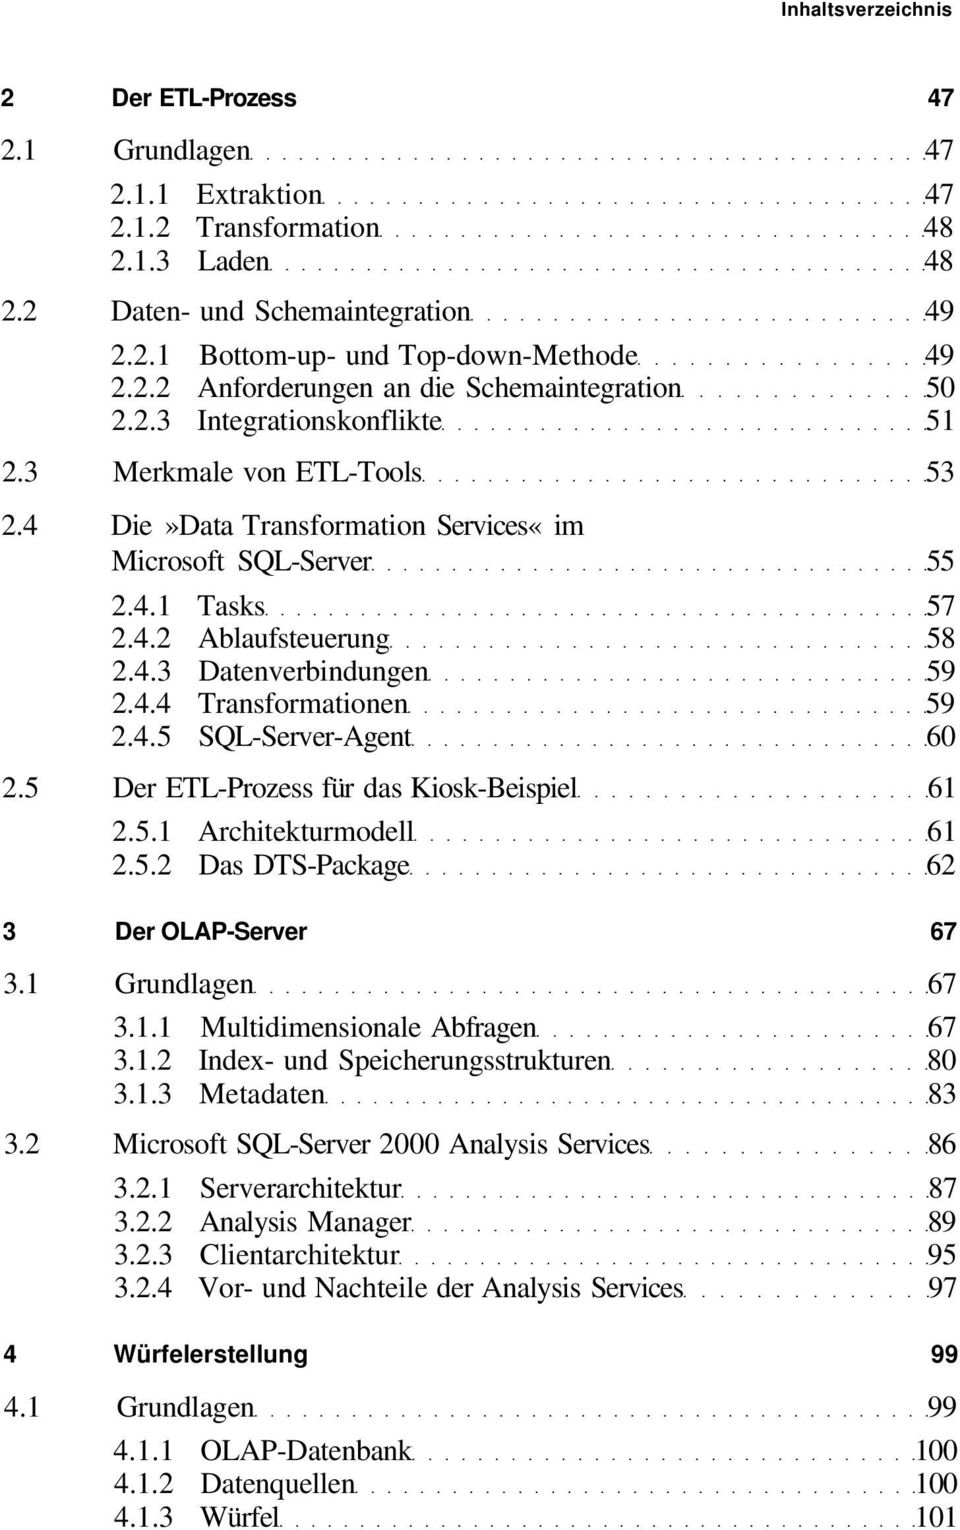 4.5 SQL-Server-Agent 60 2.5 Der ETL-Prozess für das Kiosk-Beispiel 61 2.5.1 Architekturmodell 61 2.5.2 Das DTS-Package 62 3 Der OLAP-Server 67 3.1 Grundlagen 67 3.1.1 Multidimensionale Abfragen 67 3.